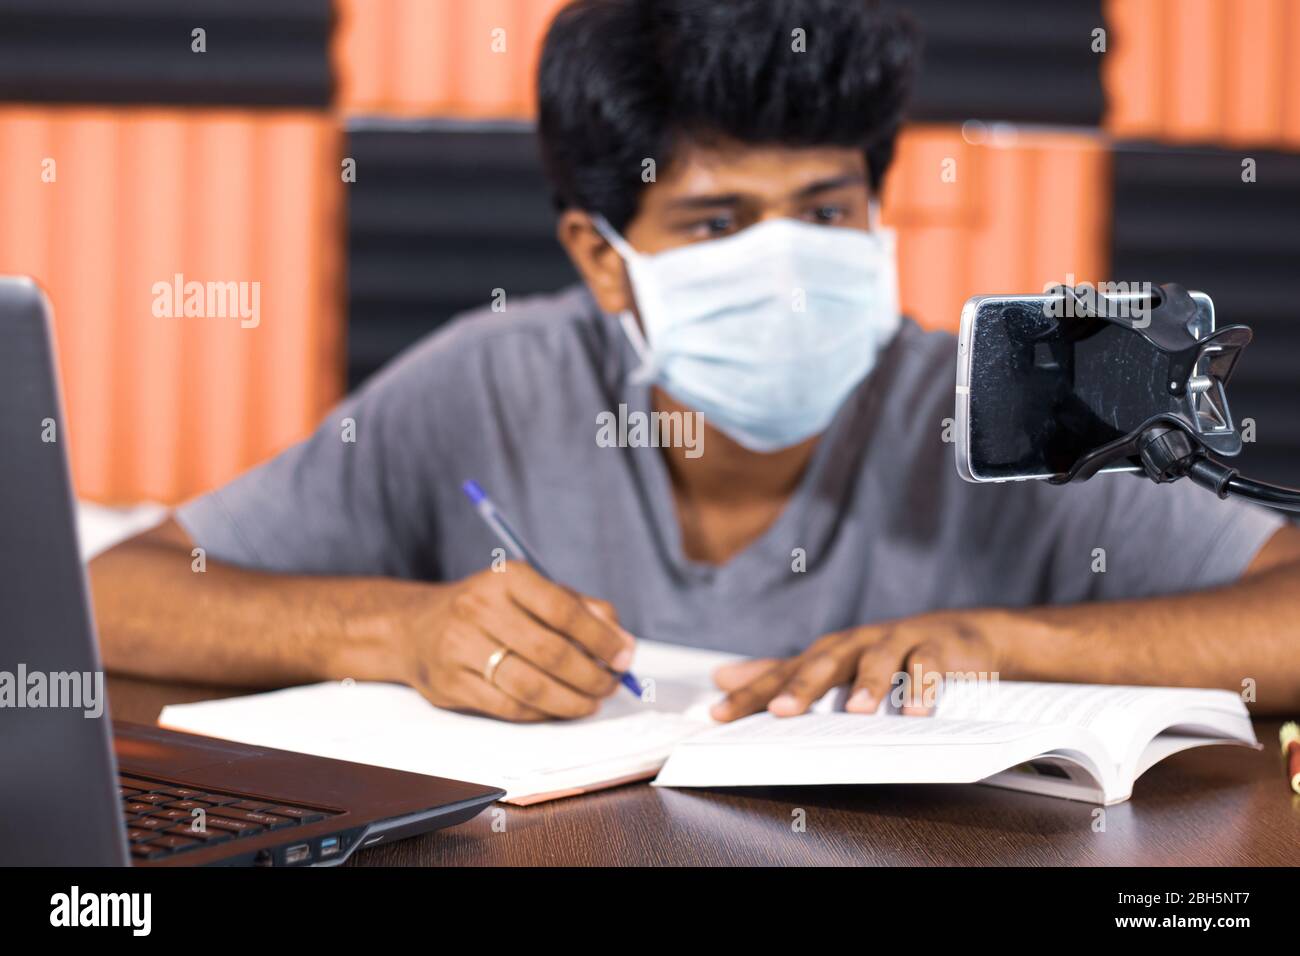 Junger Mann mit medizinischer Maske E-Learning zu Hause durch covid-19 oder Coronavirus Isolation Konzept - College-Student Notizen durch den Blick in virtuelle Stockfoto